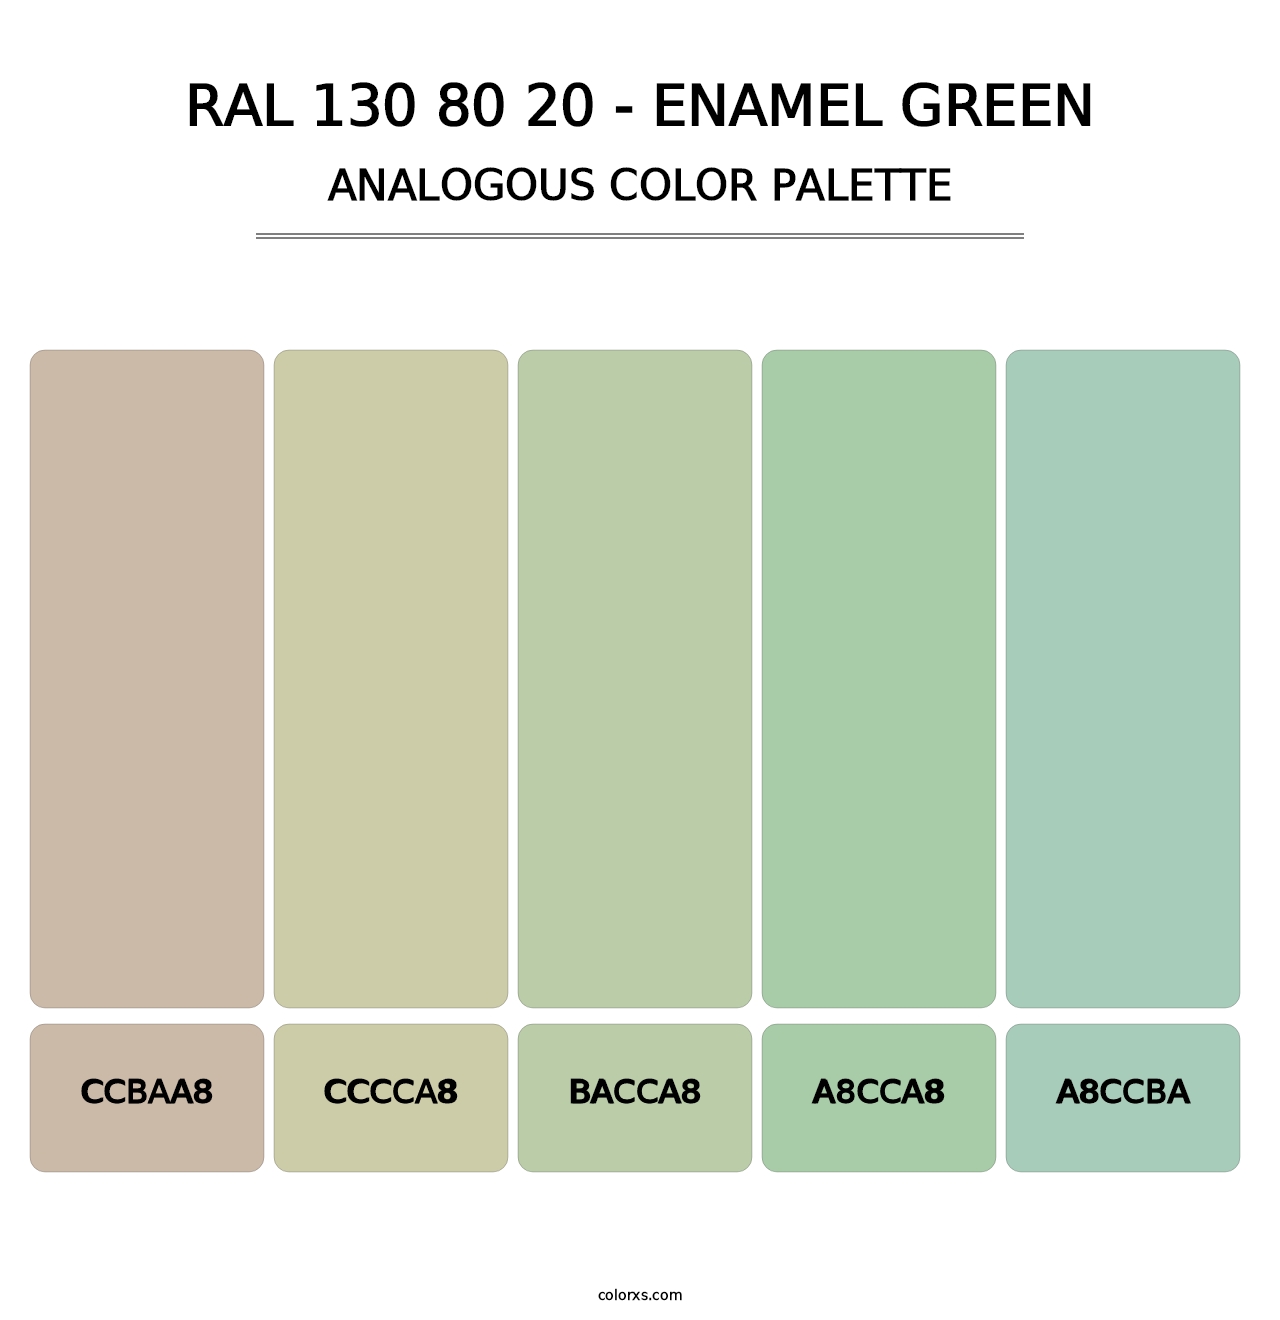 RAL 130 80 20 - Enamel Green - Analogous Color Palette